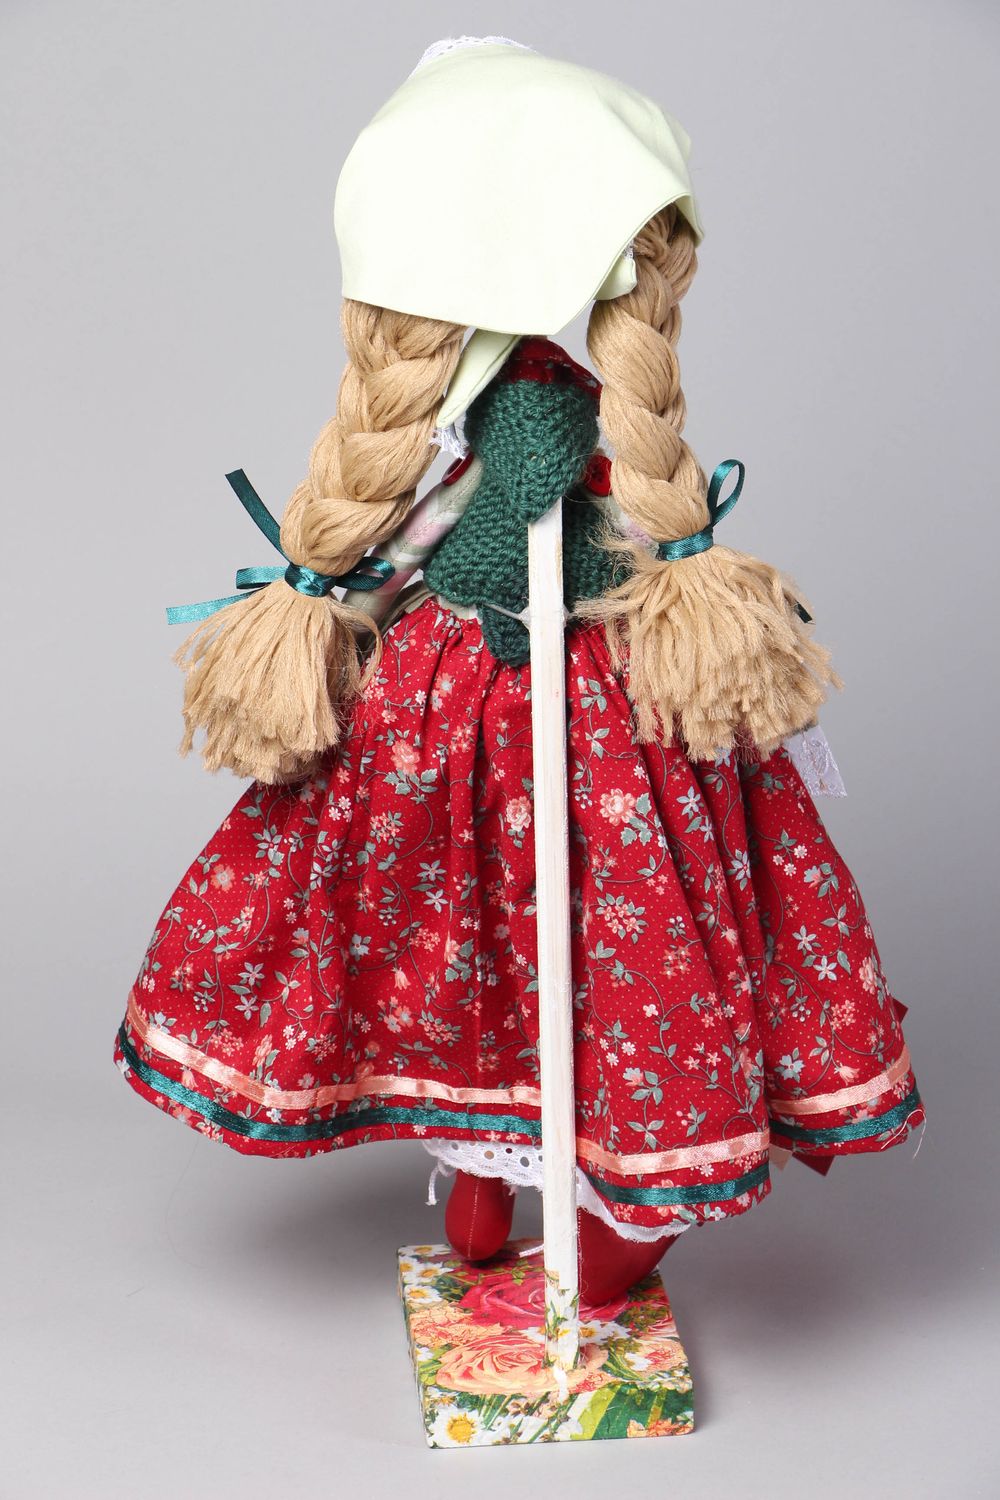 Handmade Stoff Puppe mit Ständer foto 3